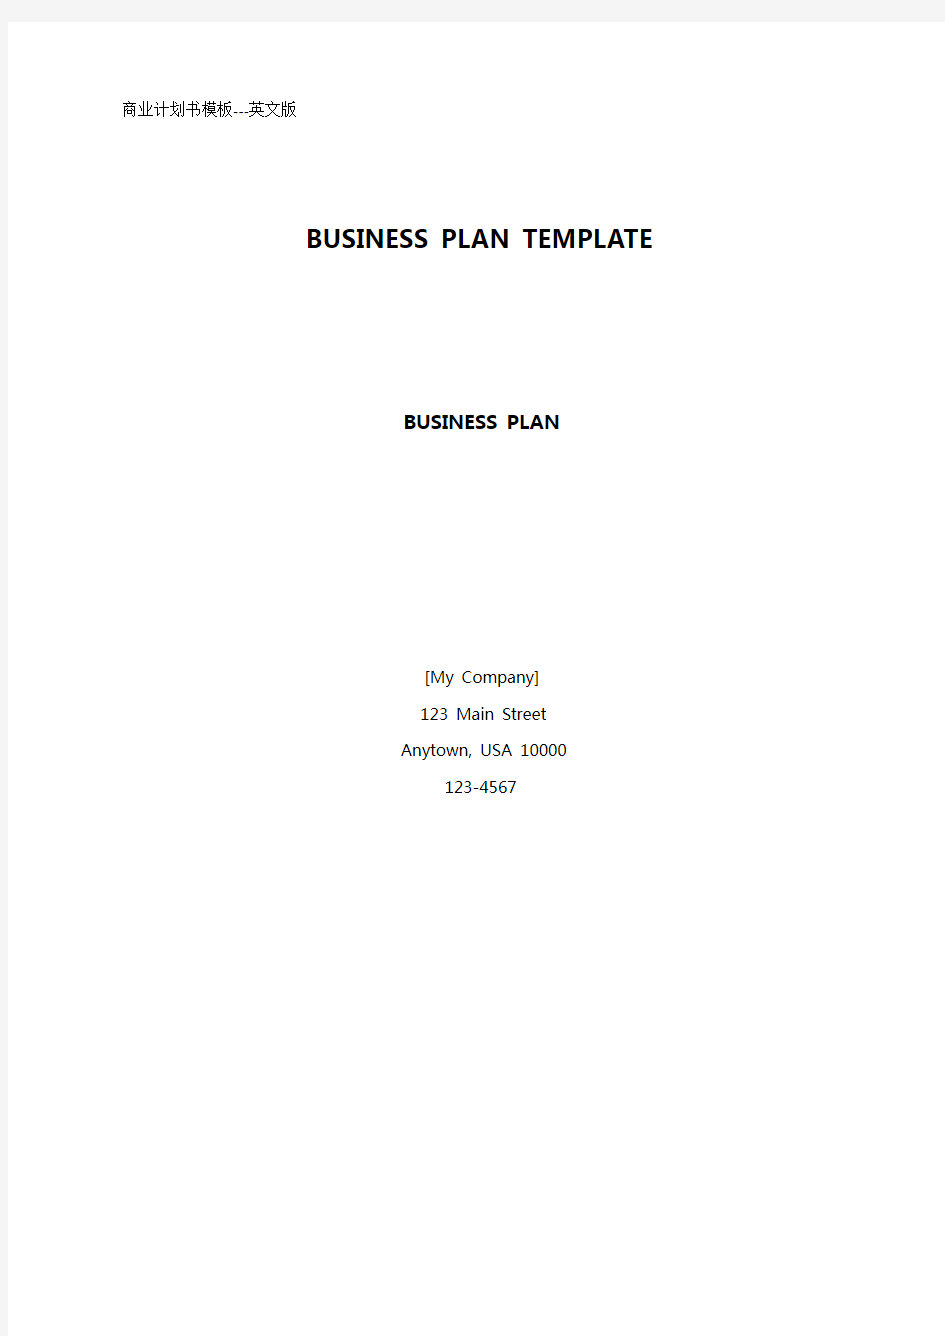 2020年(商业计划书)(英文版)商业计划书标准模板